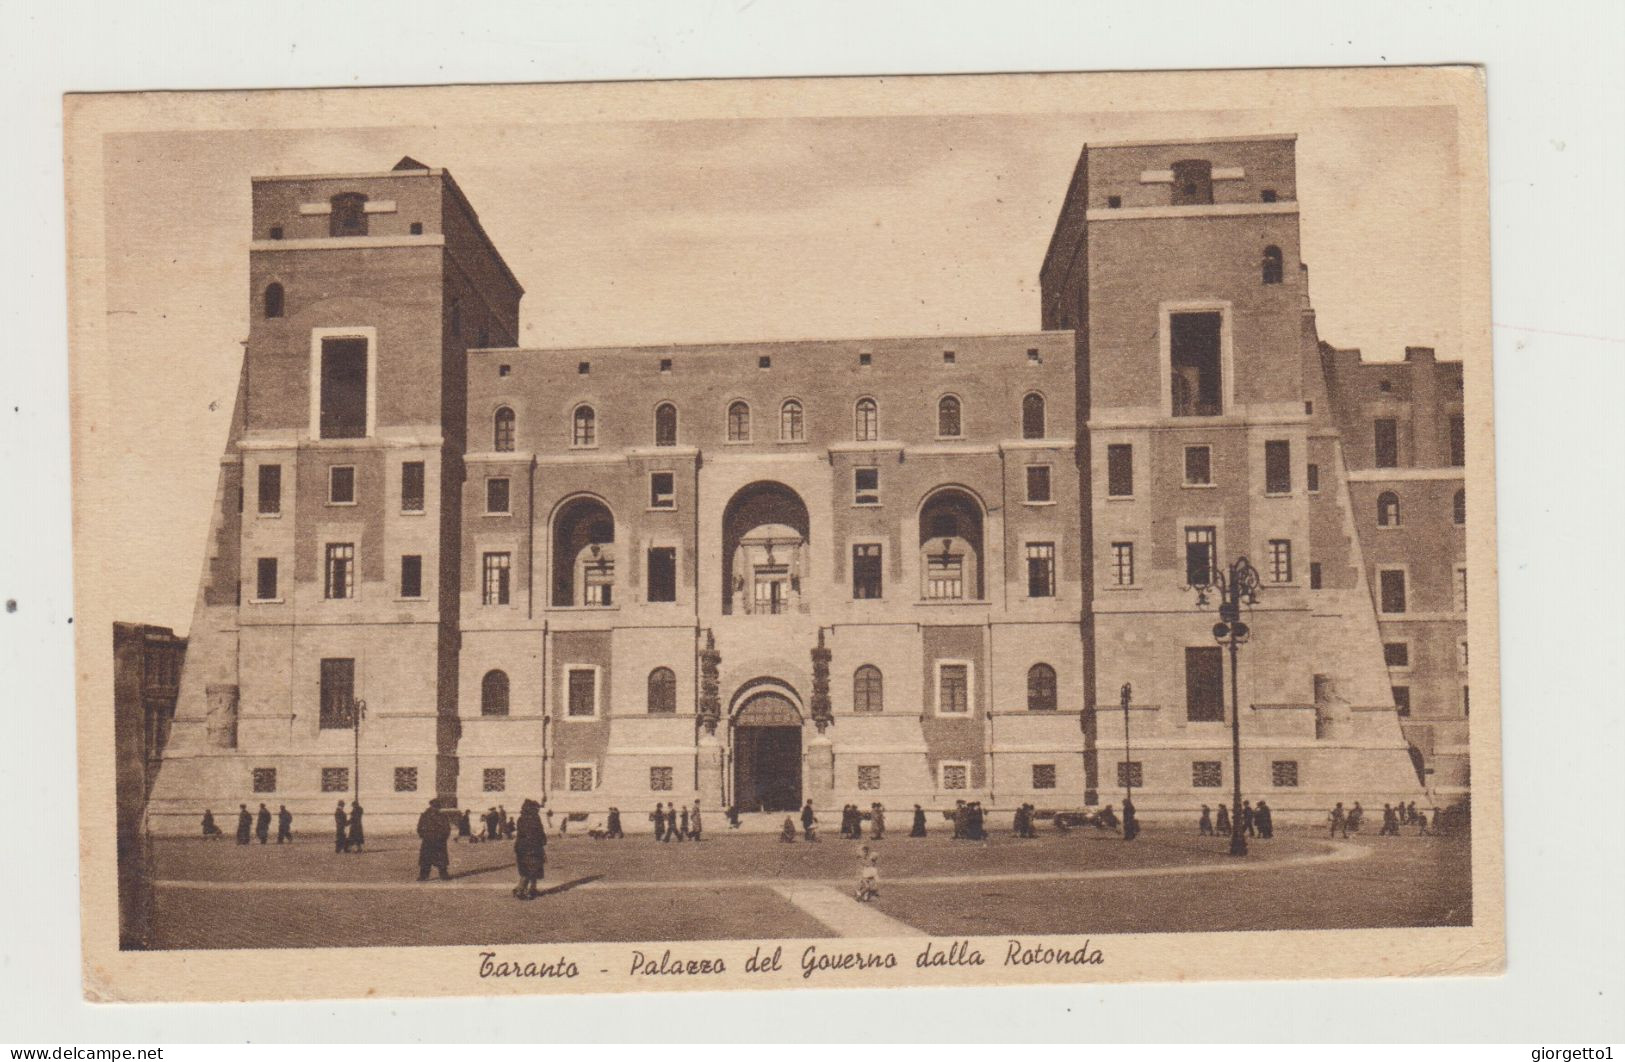 CARTOLINA TARANTO -PALAZZO GOVERNO - PONTIFICIA COMMISSIONE ASSISTENZA - REGIE POSTE DEL 1940 VERSO AMSTERDAM - OLANDA - Taranto